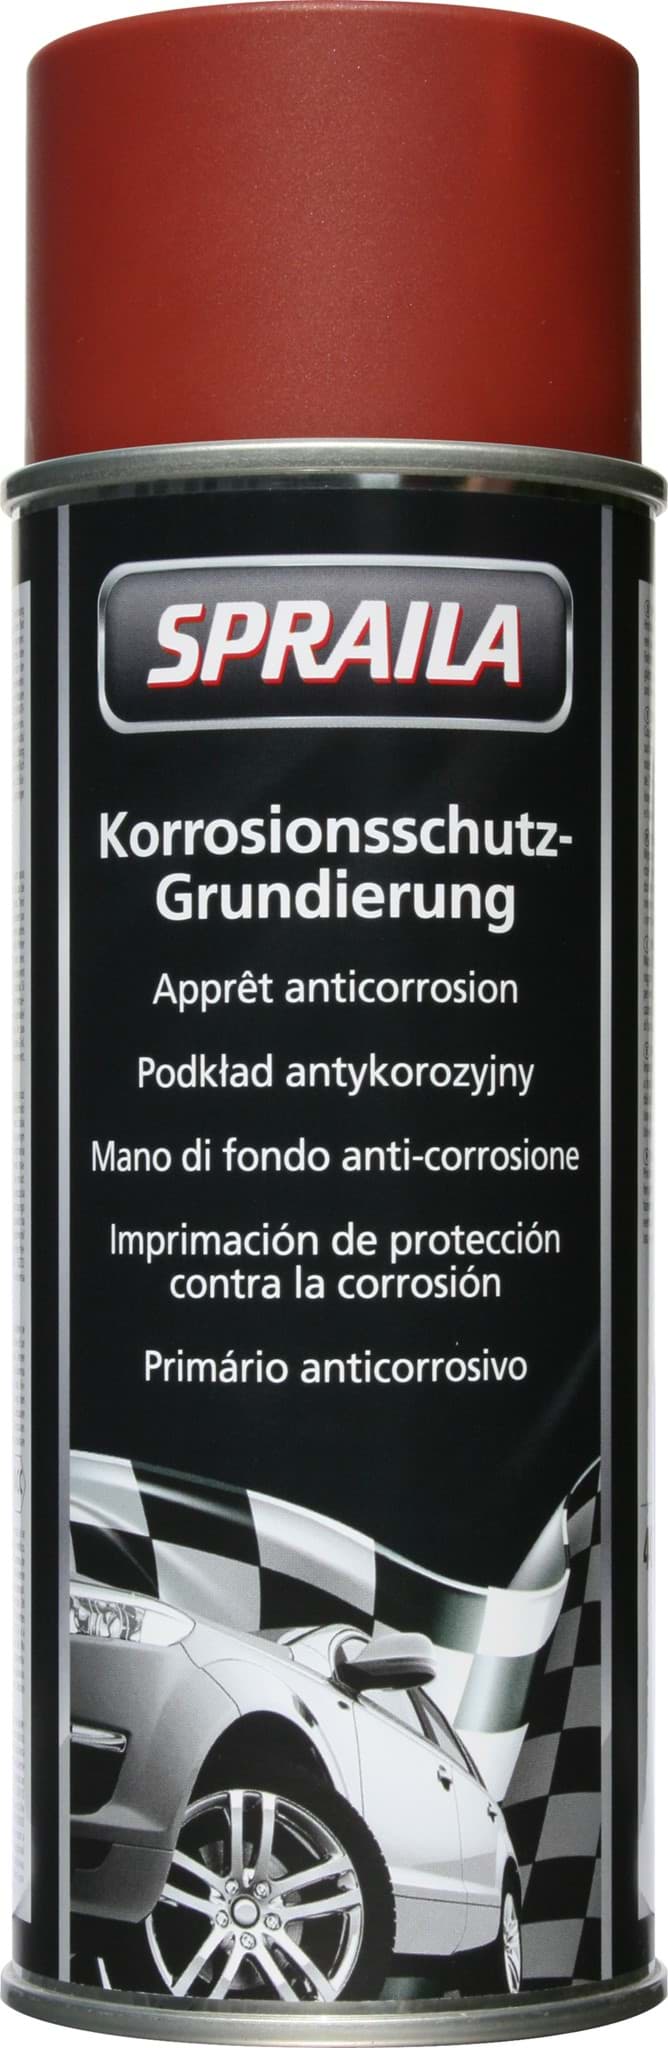 Picture of Spraila Lackspray Korrosionsschutz-Grundierung 400ml K300058